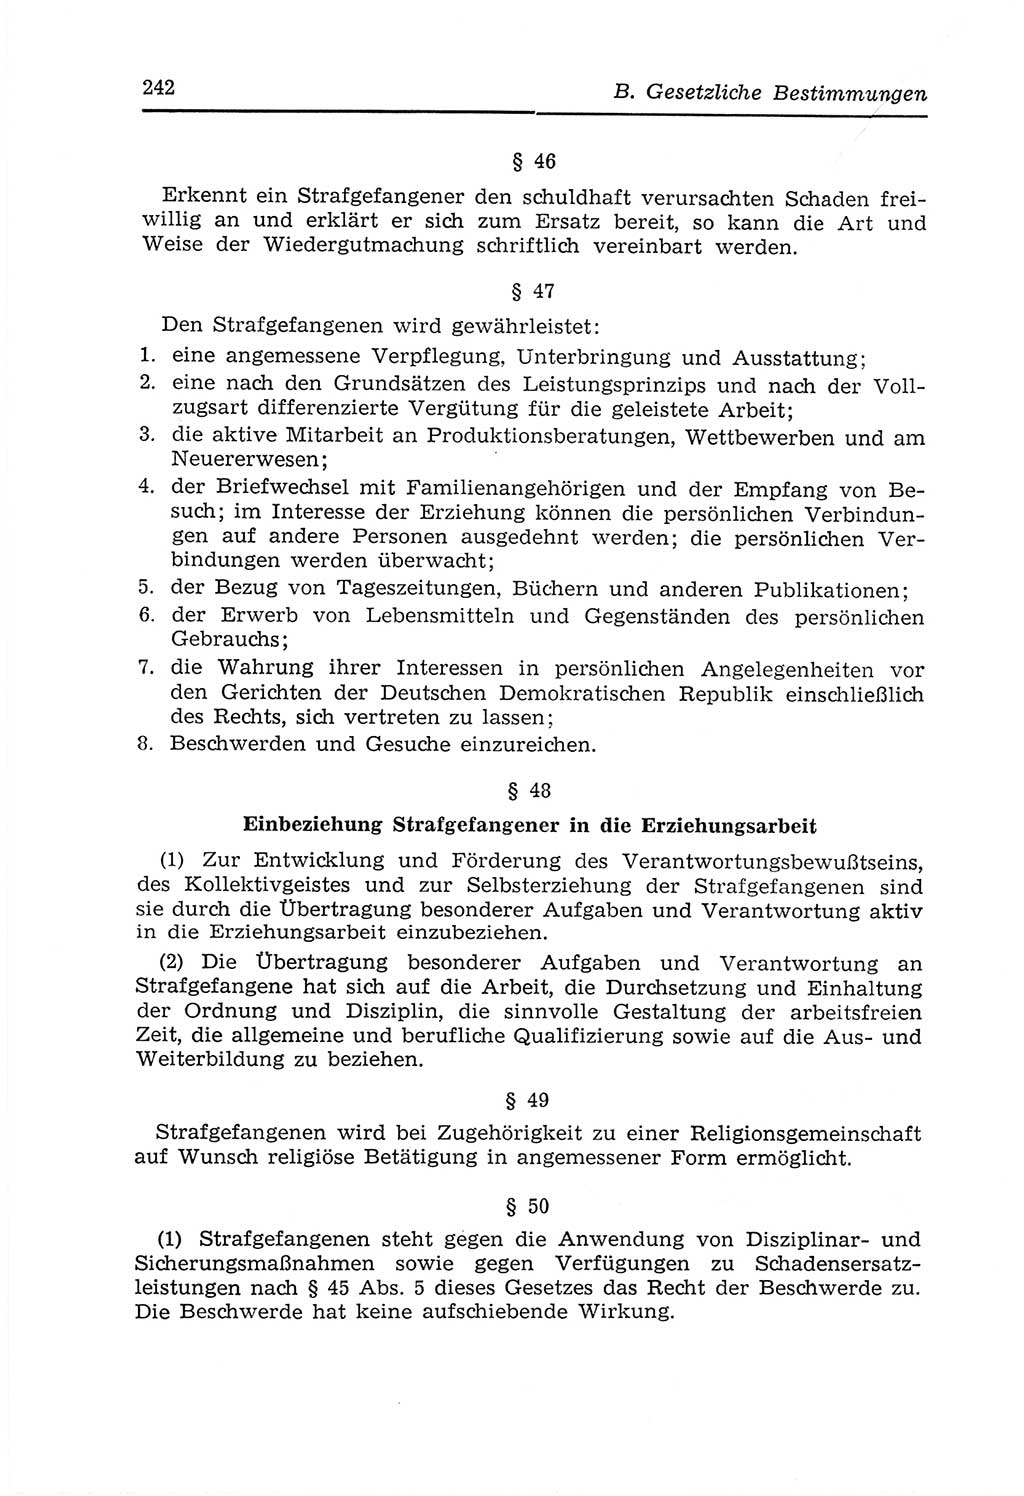 Strafvollzugs- und Wiedereingliederungsgesetz (SVWG) der Deutschen Demokratischen Republik (DDR) 1968, Seite 242 (SVWG DDR 1968, S. 242)